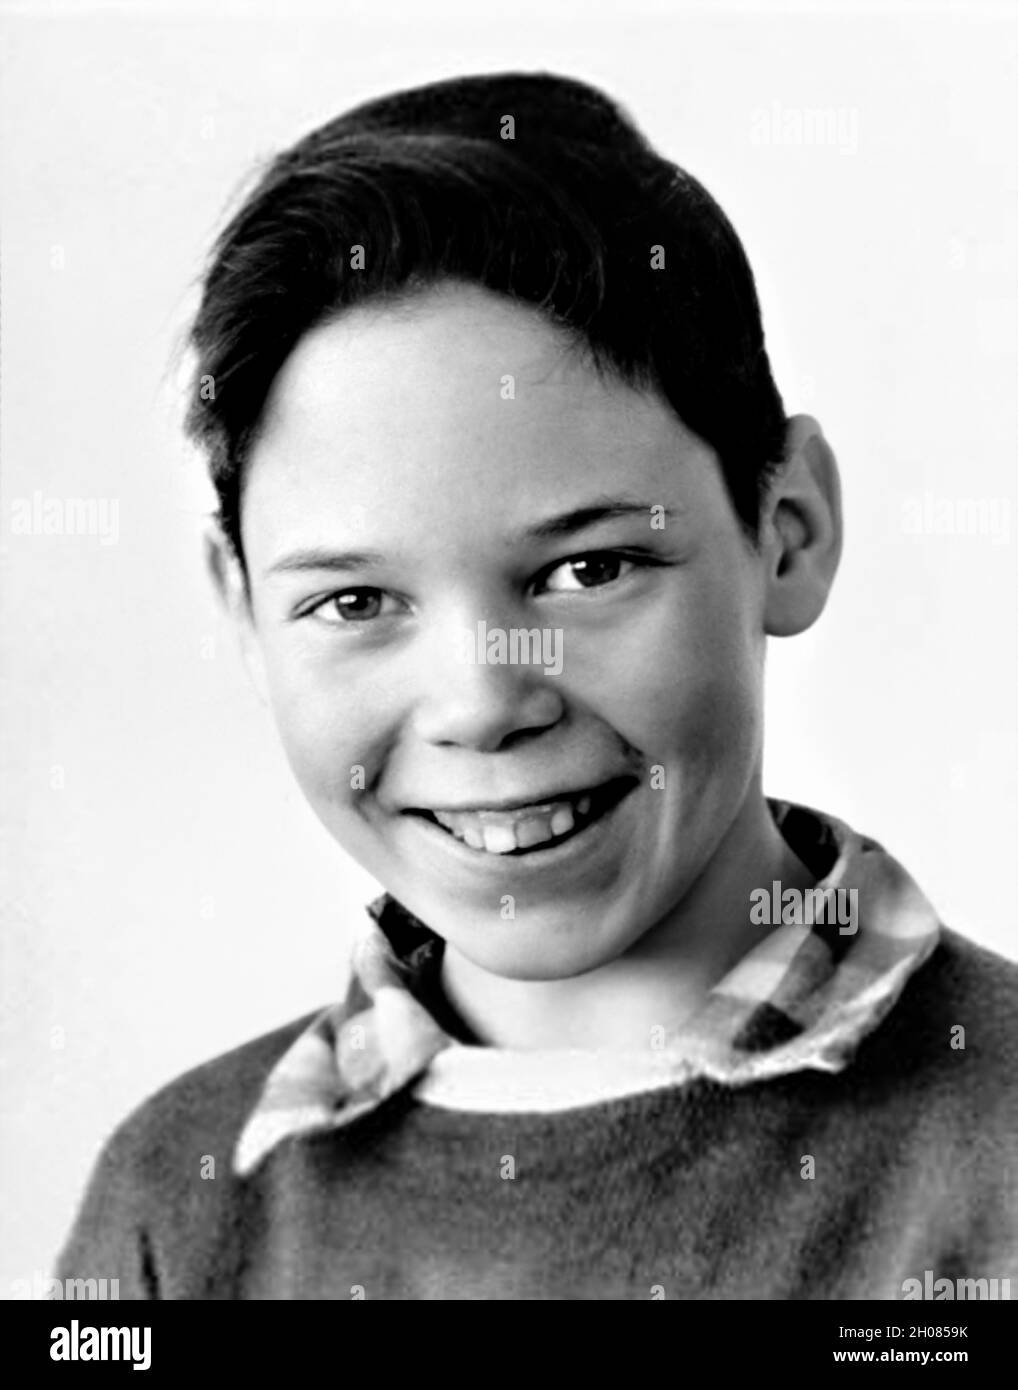 1956 c. , USA: The celebrated american singer and composer  NEIL YOUNG ( born 12 november 1945 ) when was a young boy aged 11 .  Unknown photographer. - HISTORY - FOTO STORICHE - personalità da bambino bambini da giovane - personality personalities when was young - INFANZIA - CHILDHOOD - BAMBINO  - BAMBINI - CHILDREN - CHILD - MUSIC - MUSICA - cantante - COMPOSITORE - PORTRAIT - RITRATTO - TEENAGER --- ARCHIVIO GBB Stock Photo